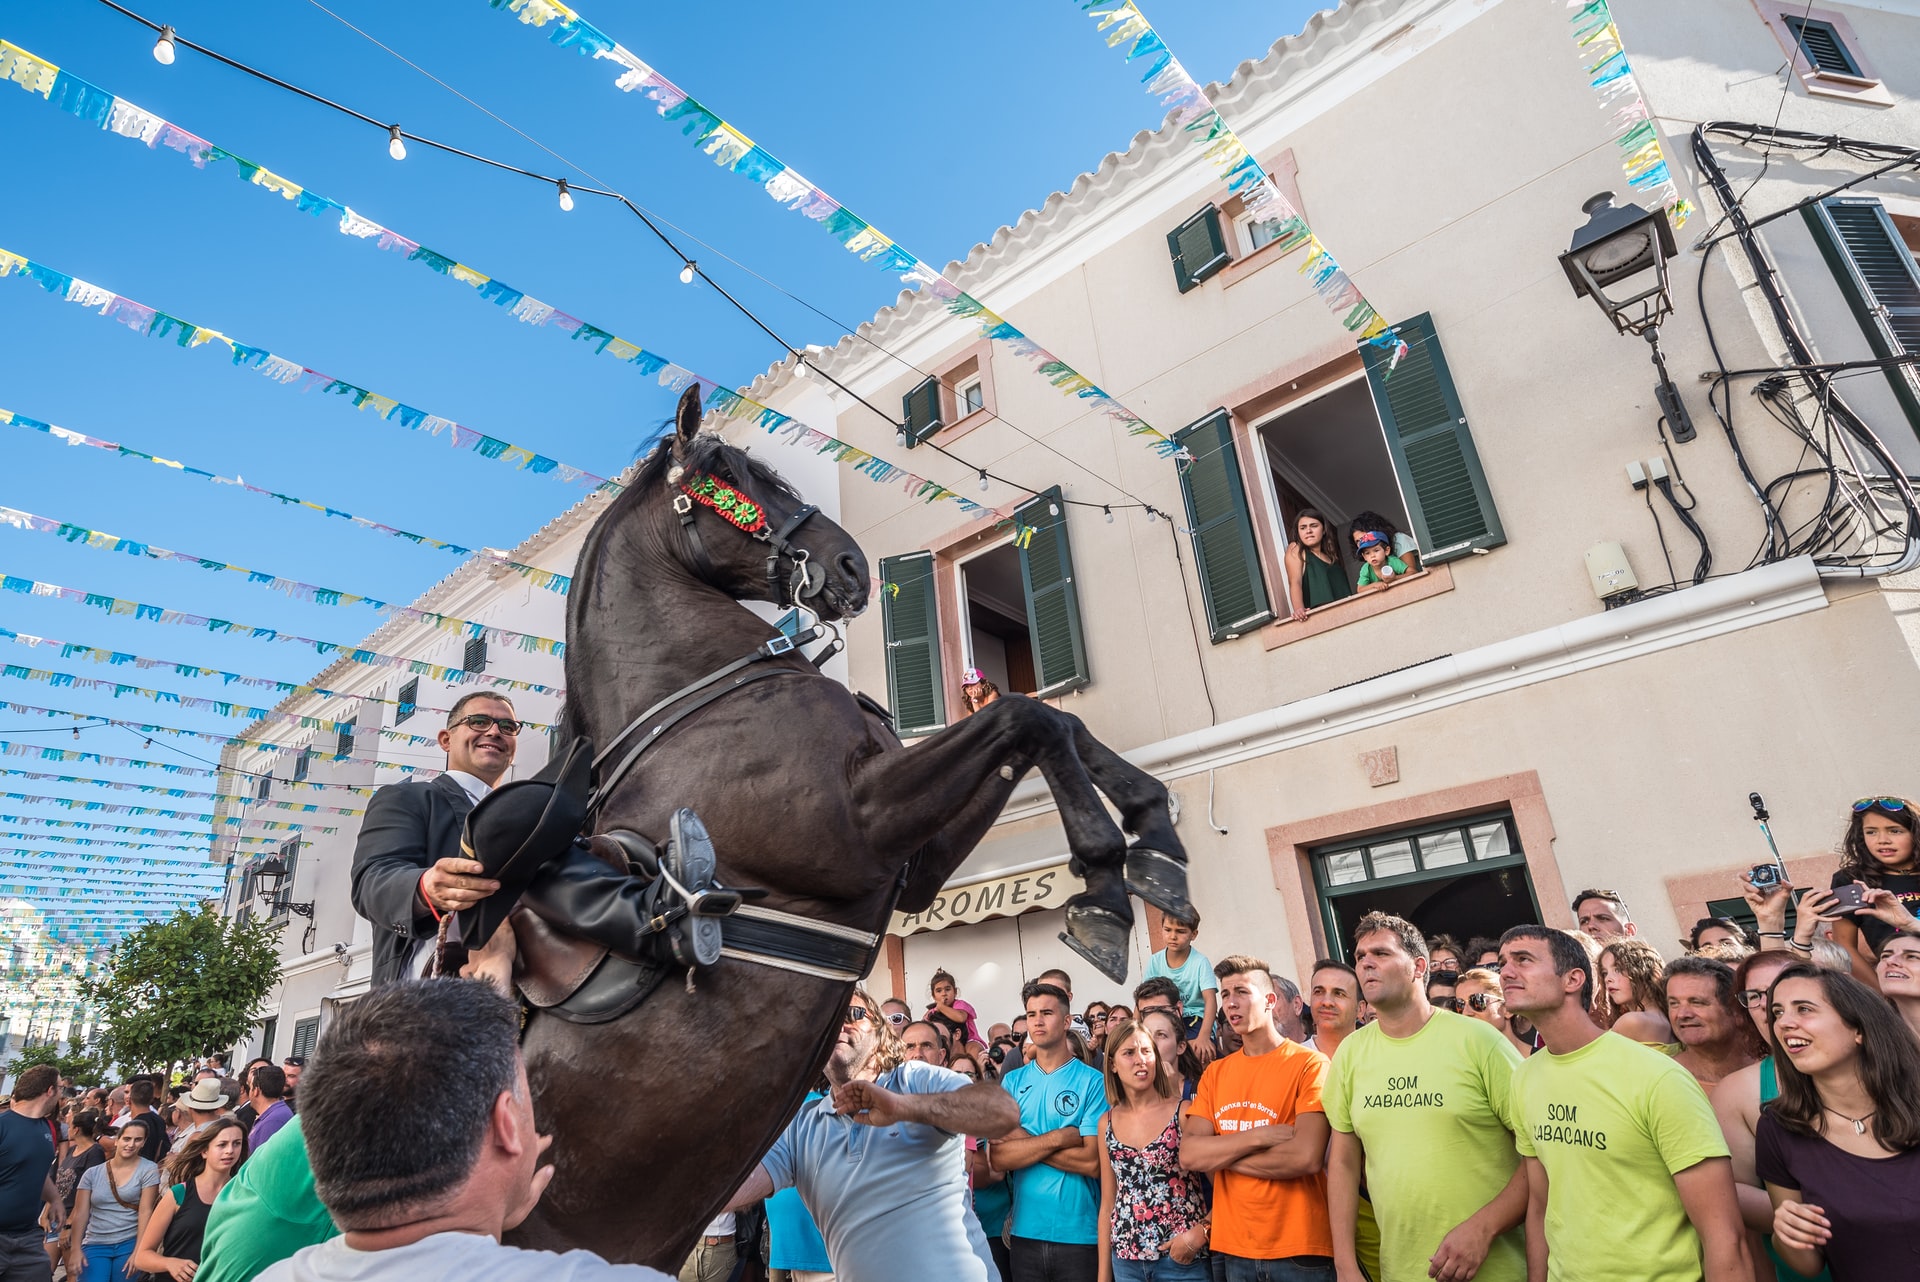 Fiestas in Es Mercadal Menorca